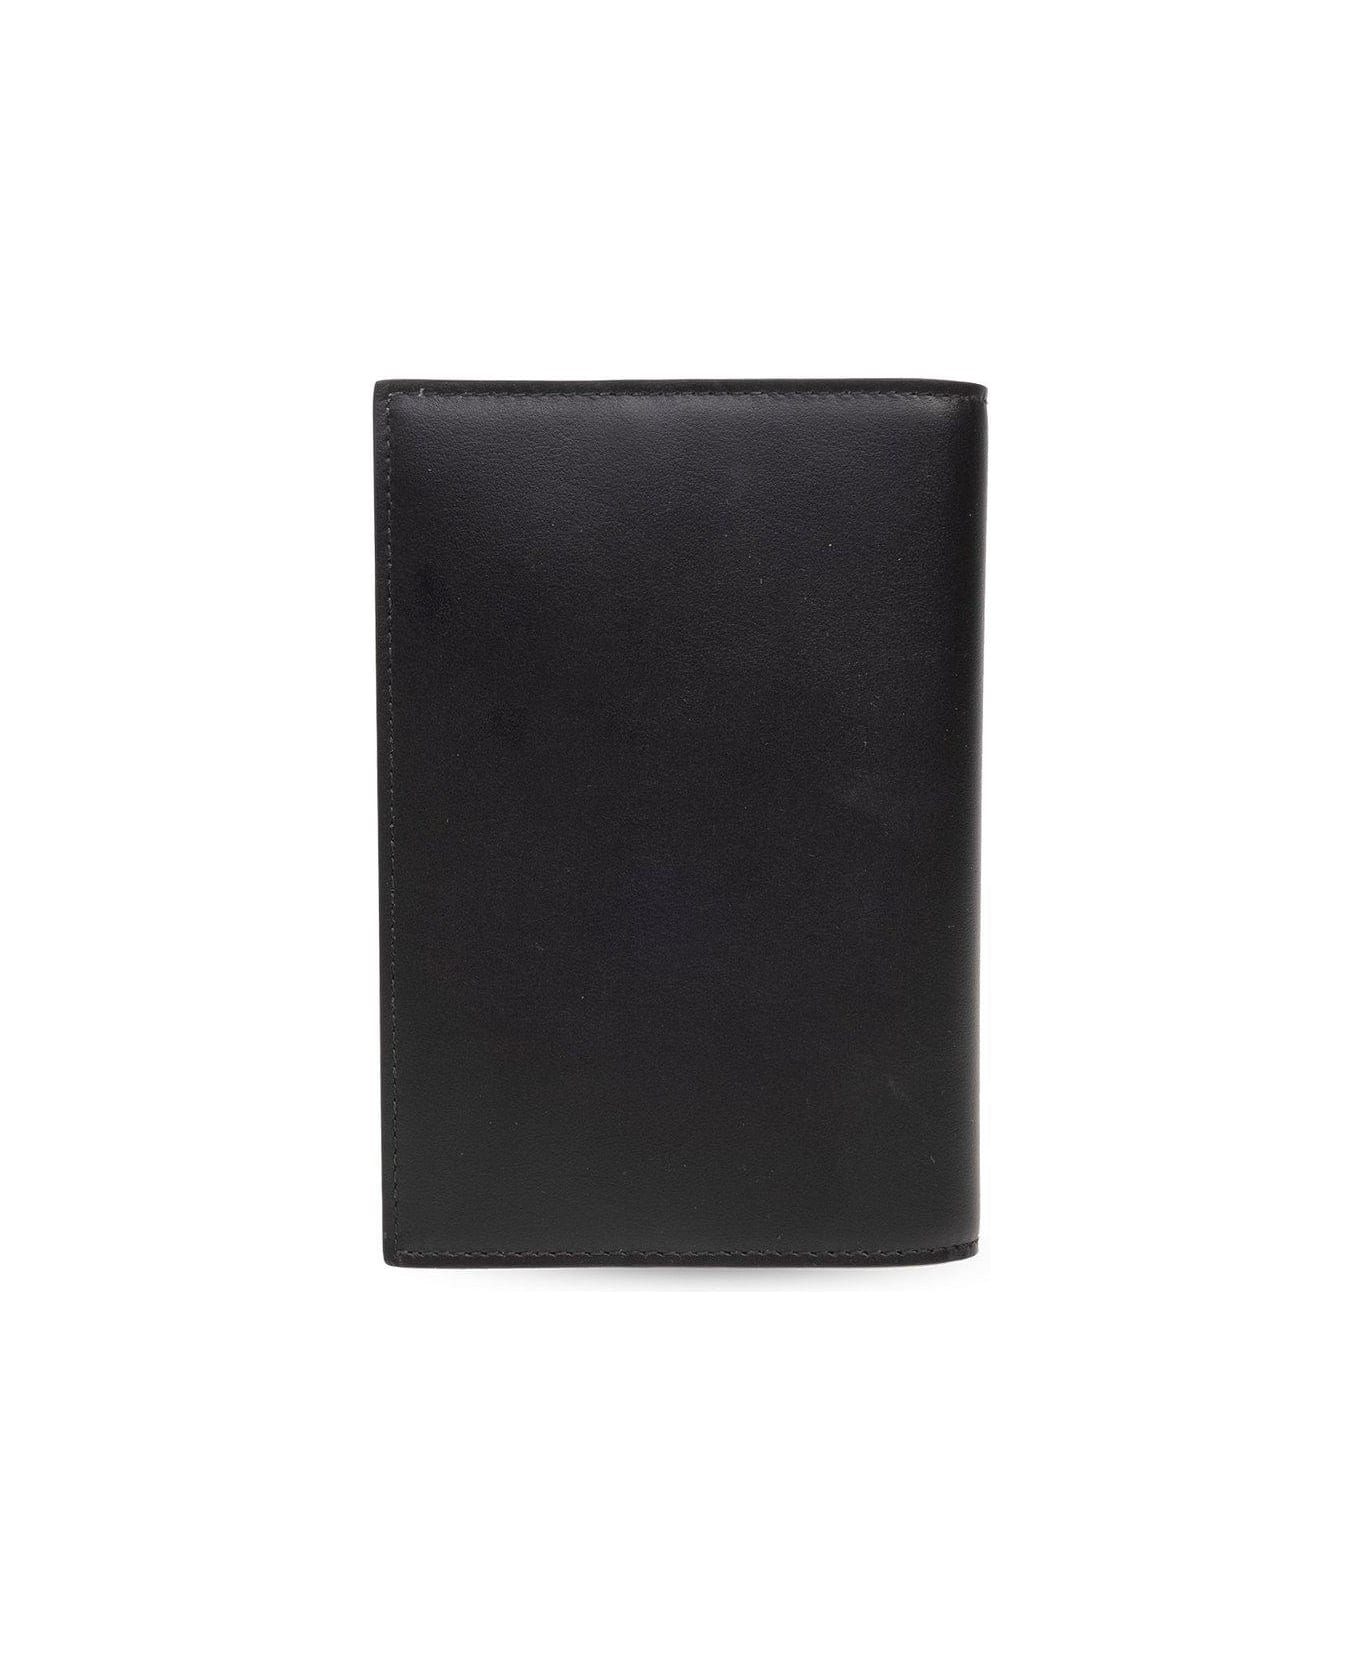 Dolce & Gabbana Passport Holder - Black